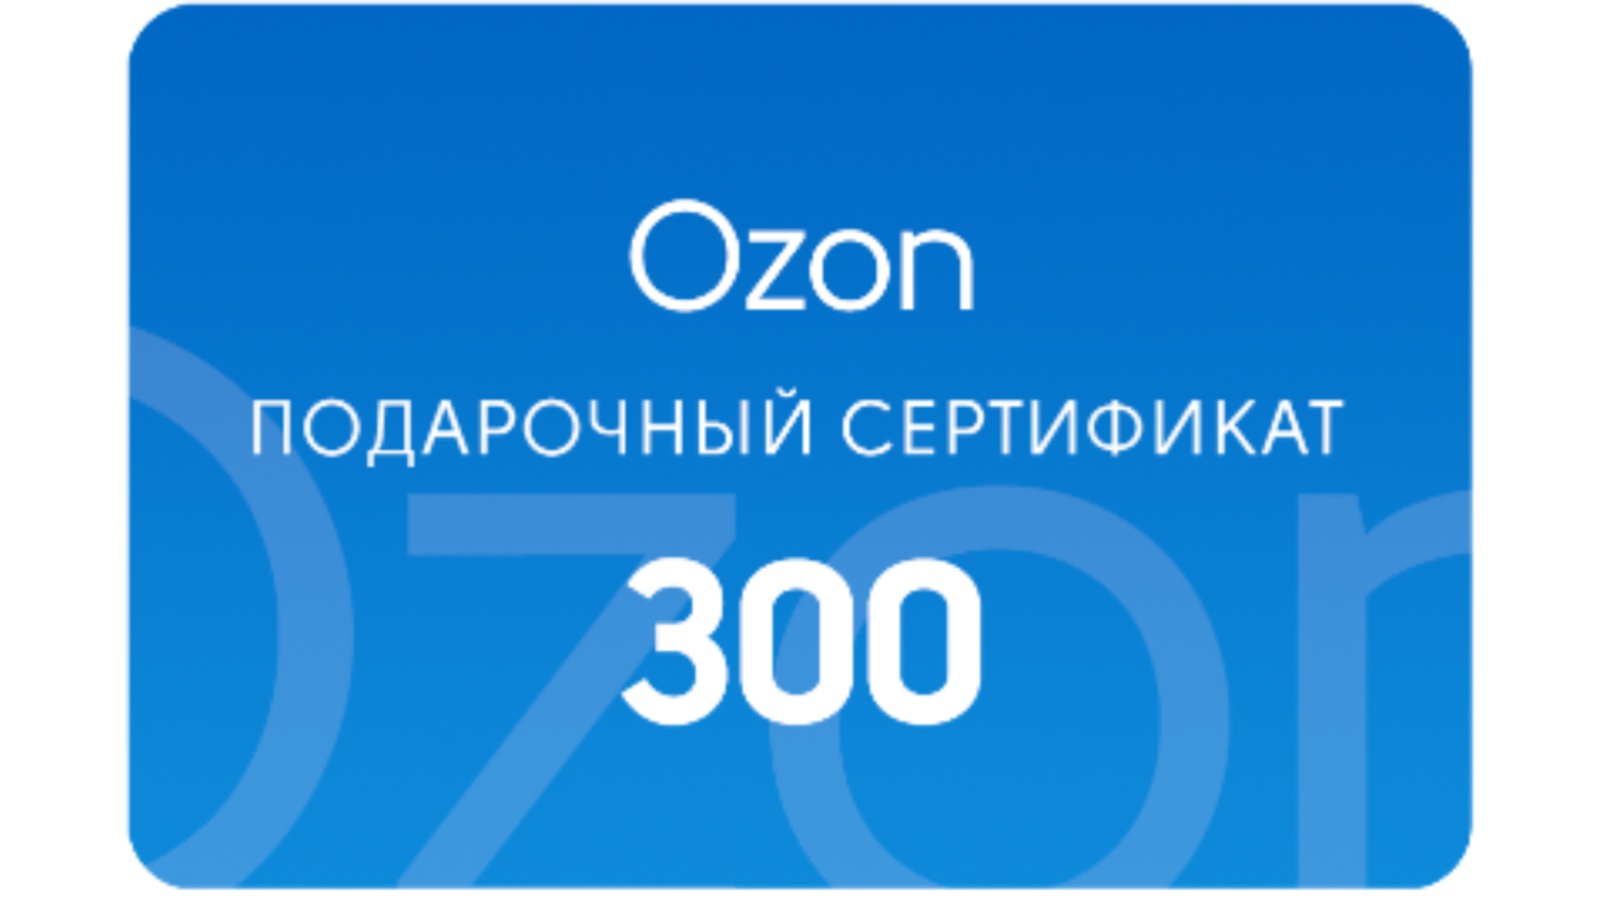 Озон до 300 тысяч рублей. Подарочный сертификат Озон. Подарочная карта. Сертификат OZON. Подарочная карта OZON.